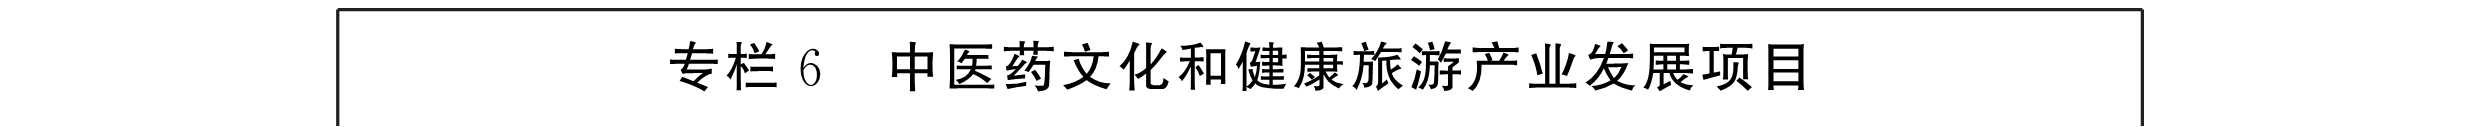 云南省人民政府办公厅关于印发云南省中医药健康服务发展规划(2015—2020年)的通知-000013.png